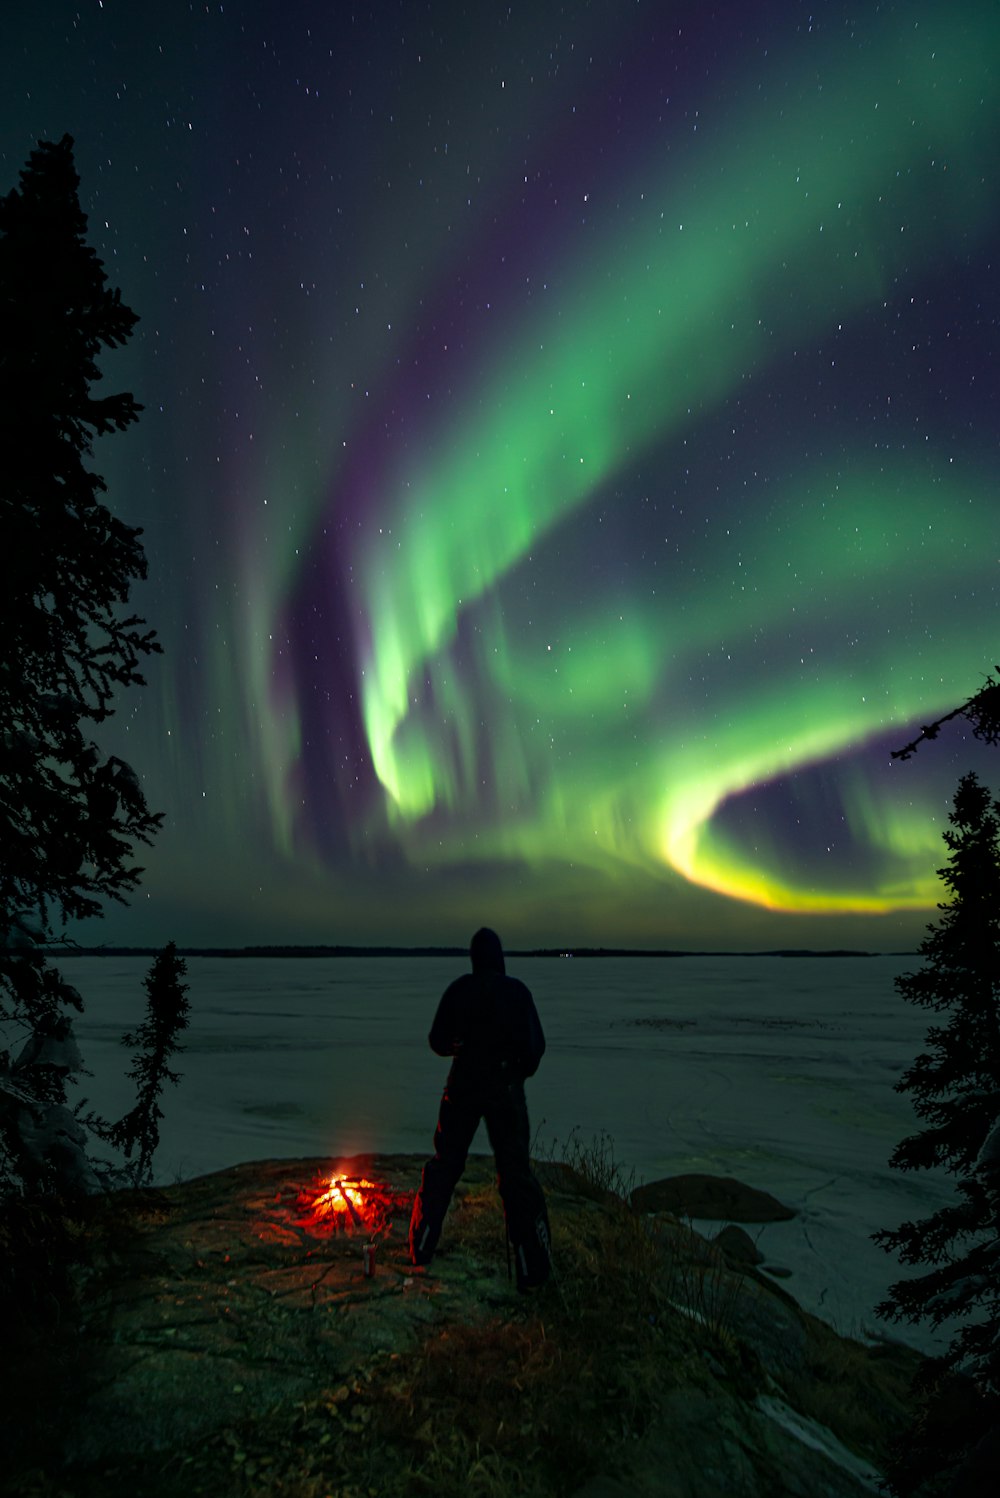 a man standing next to a campfire under an aurora bore